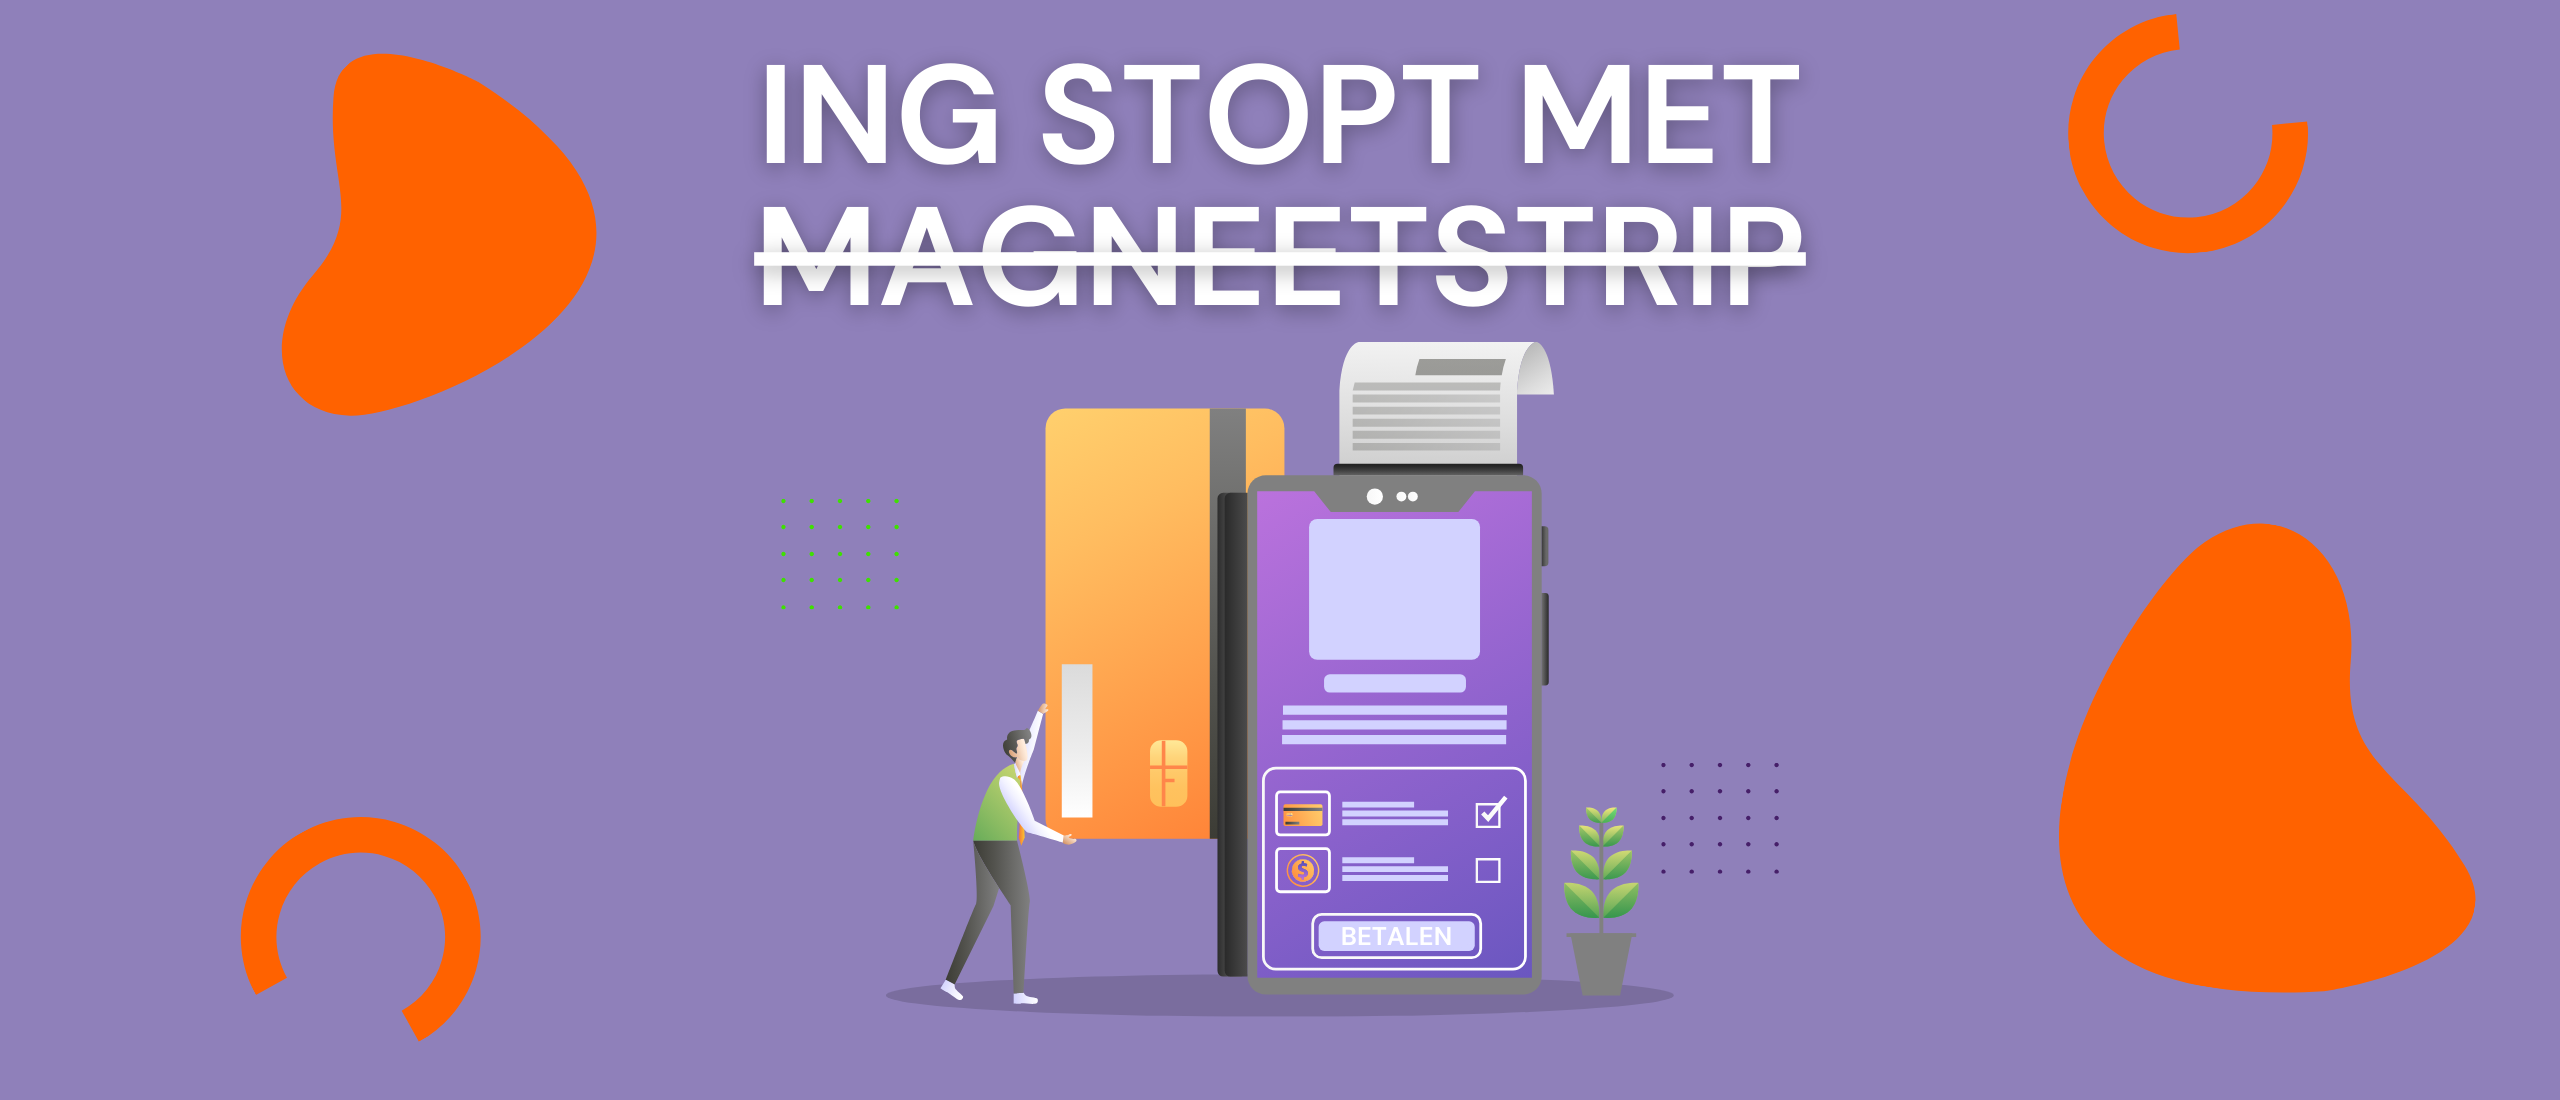 ING stopt met magneetstrip betaalpassen, wat betekent dit voor ondernemers?